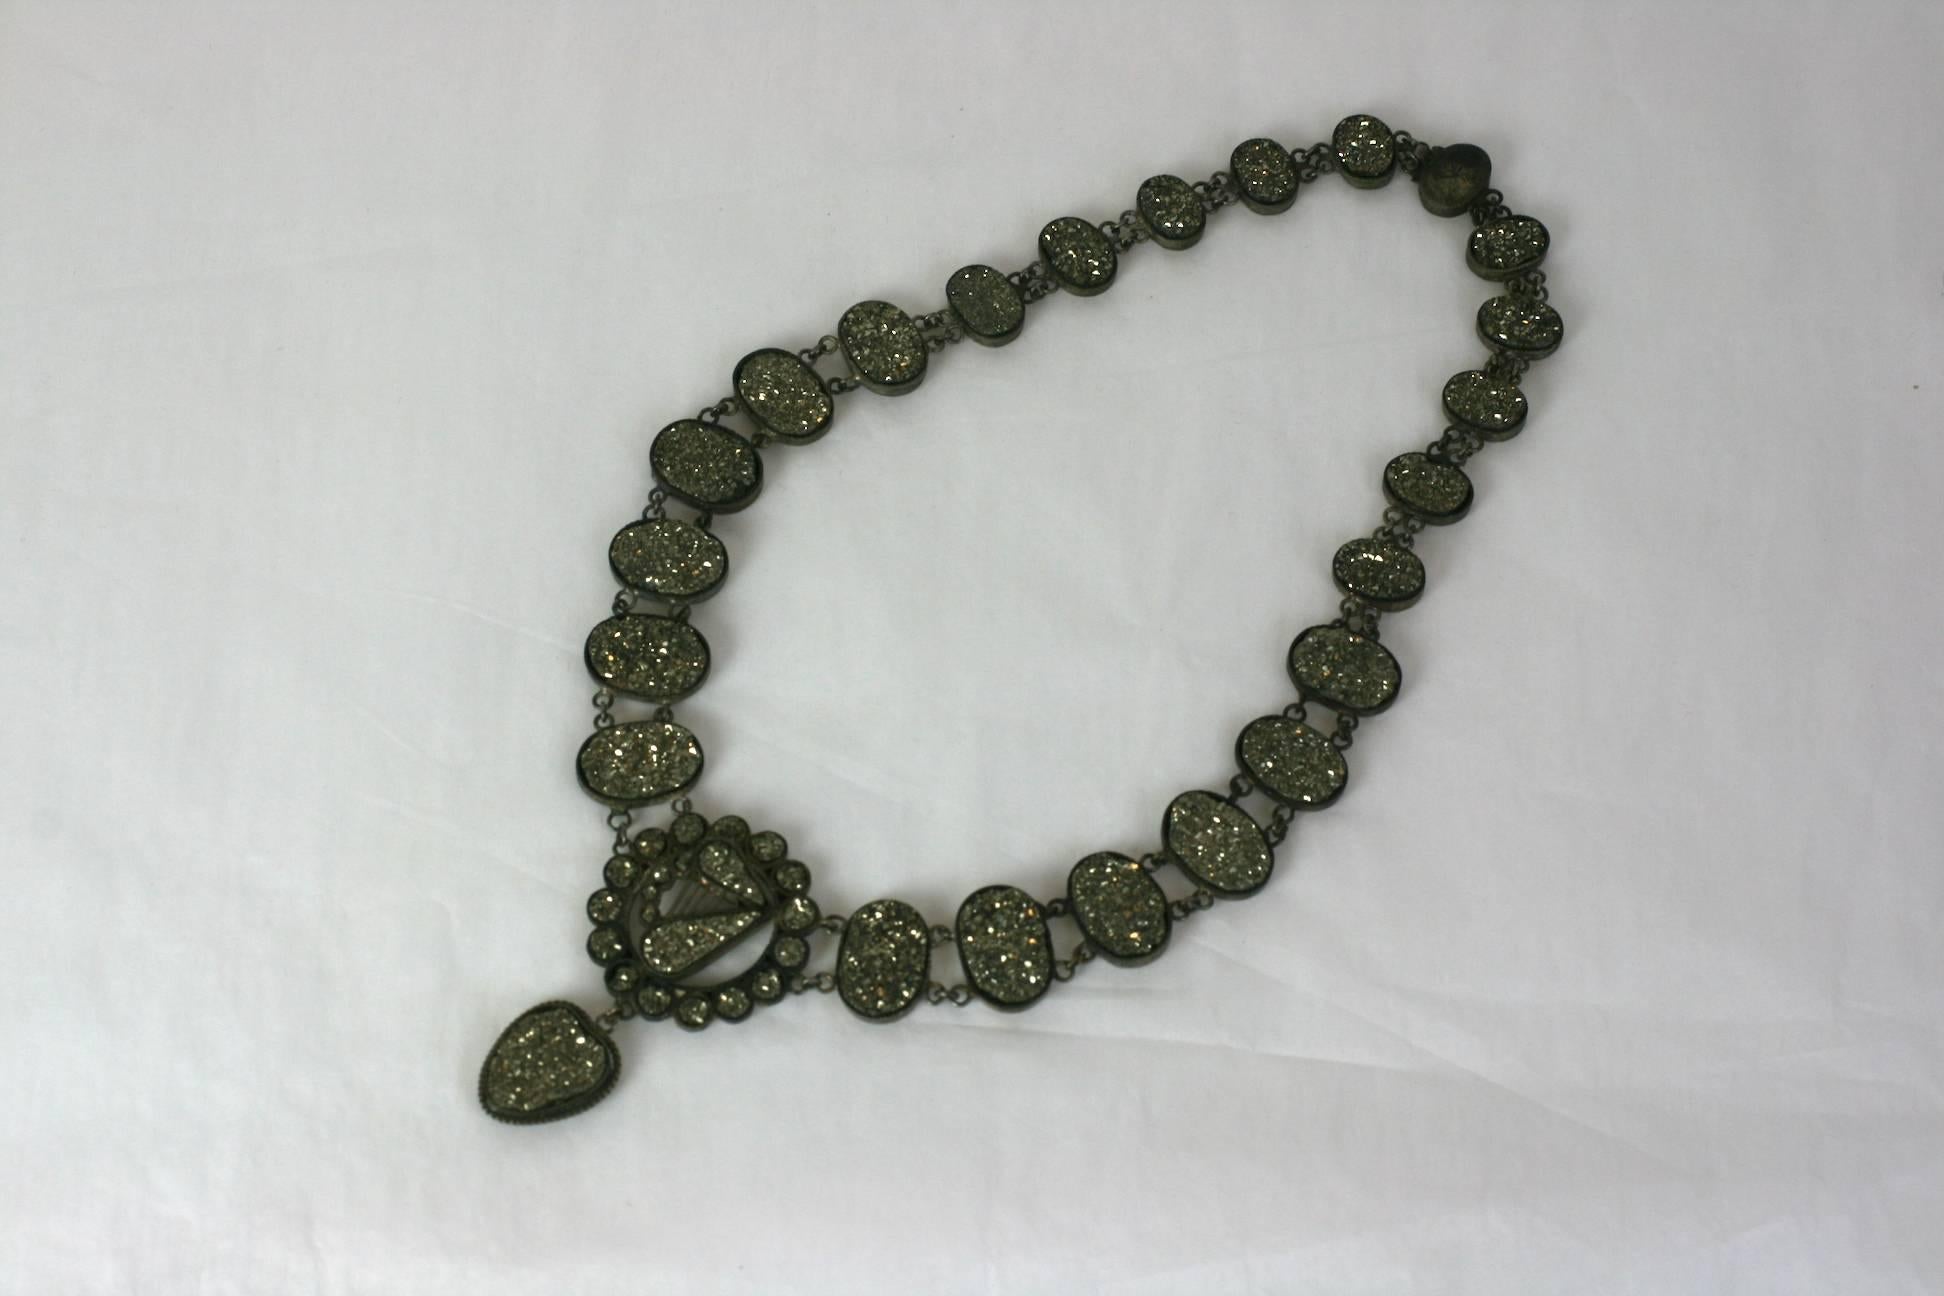 Grand et merveilleux collier de pyrite victorien de la fin du 19ème siècle. Autrefois appelé 